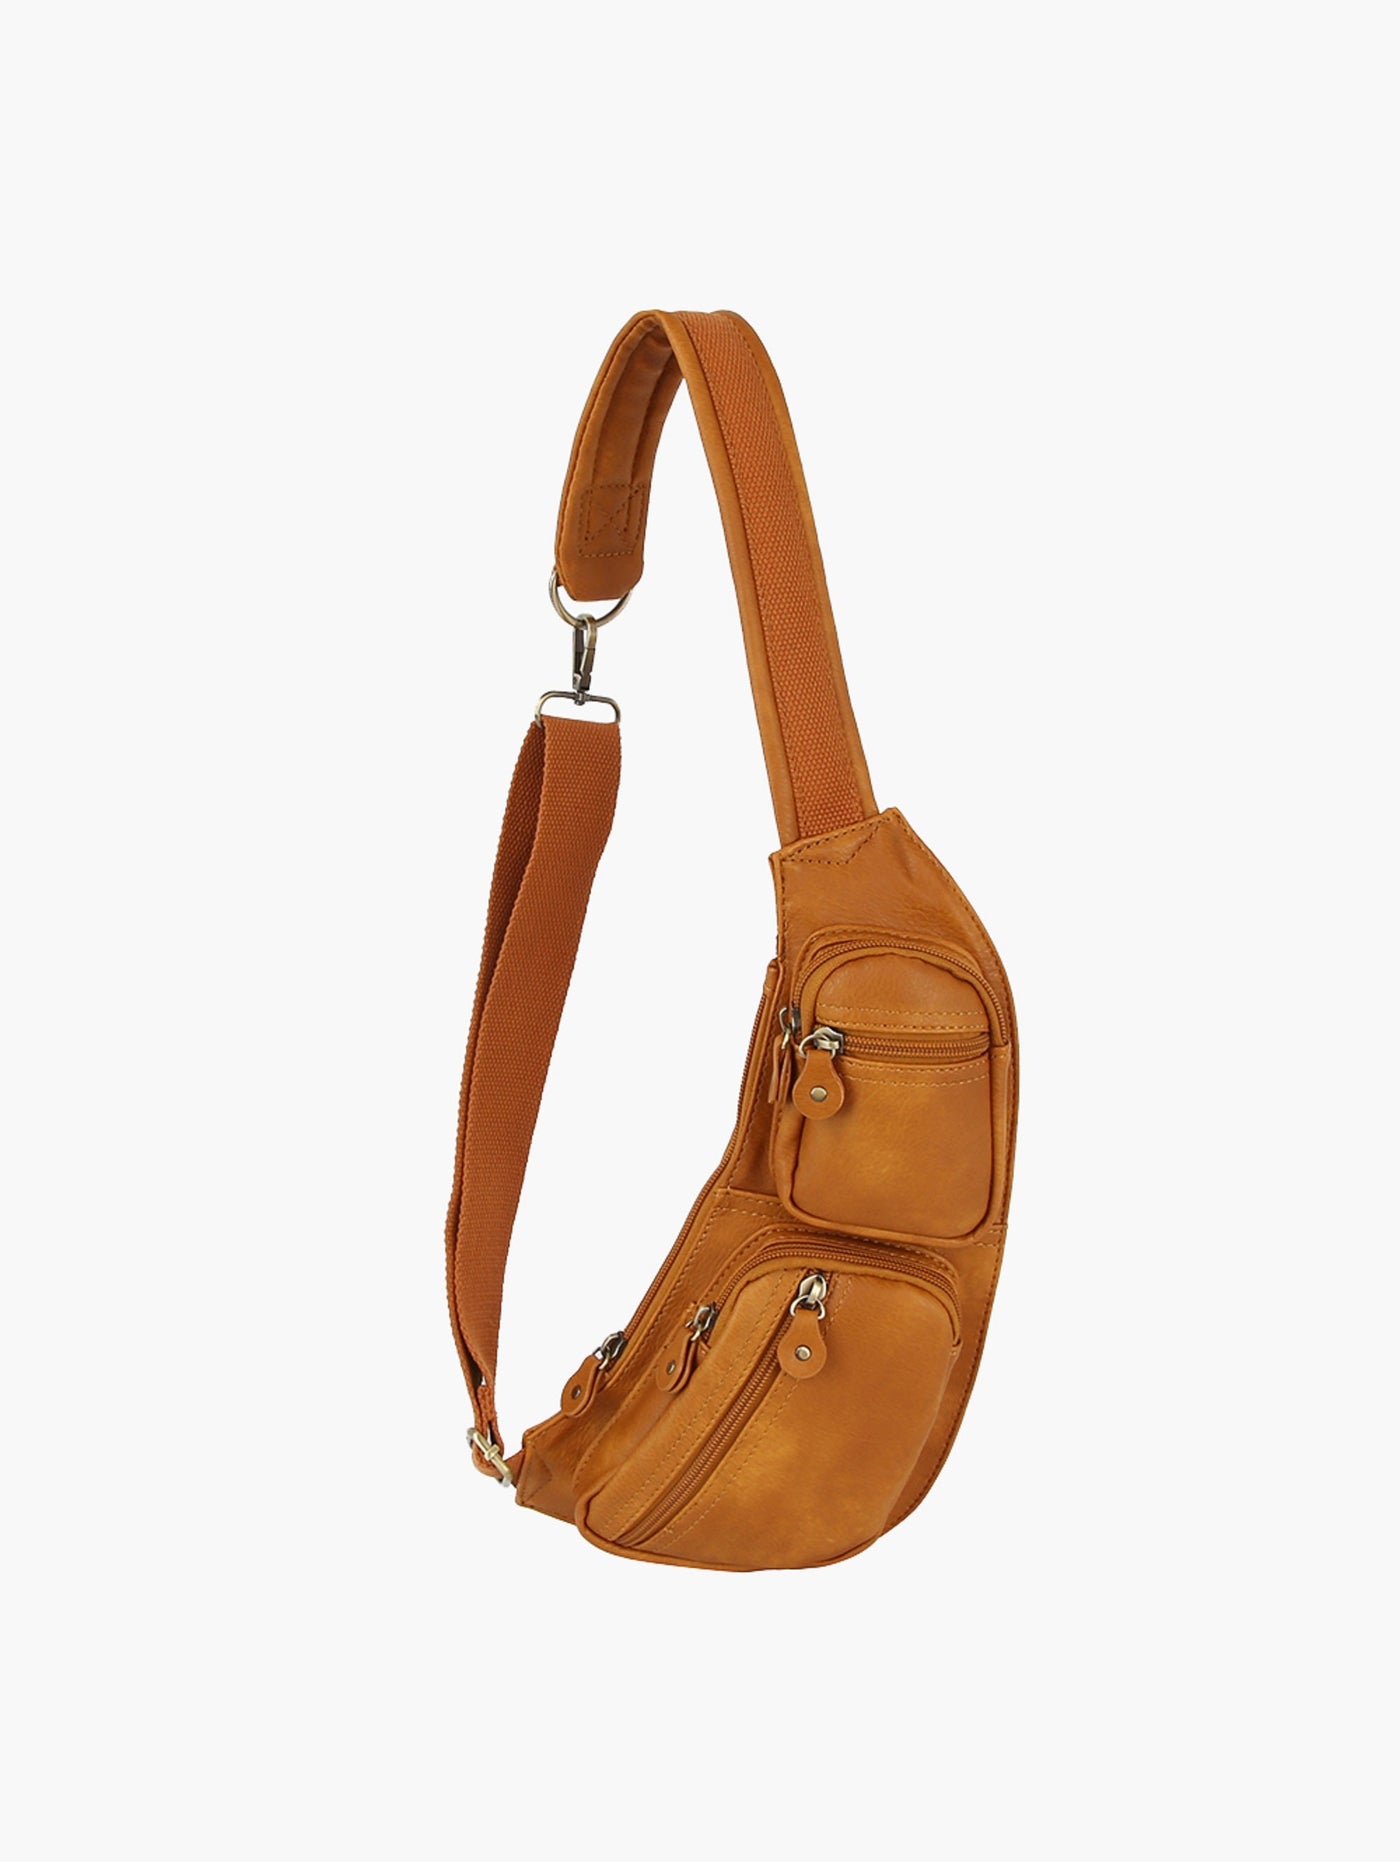 CQF014 Eva Pocket Utility Sling Bag